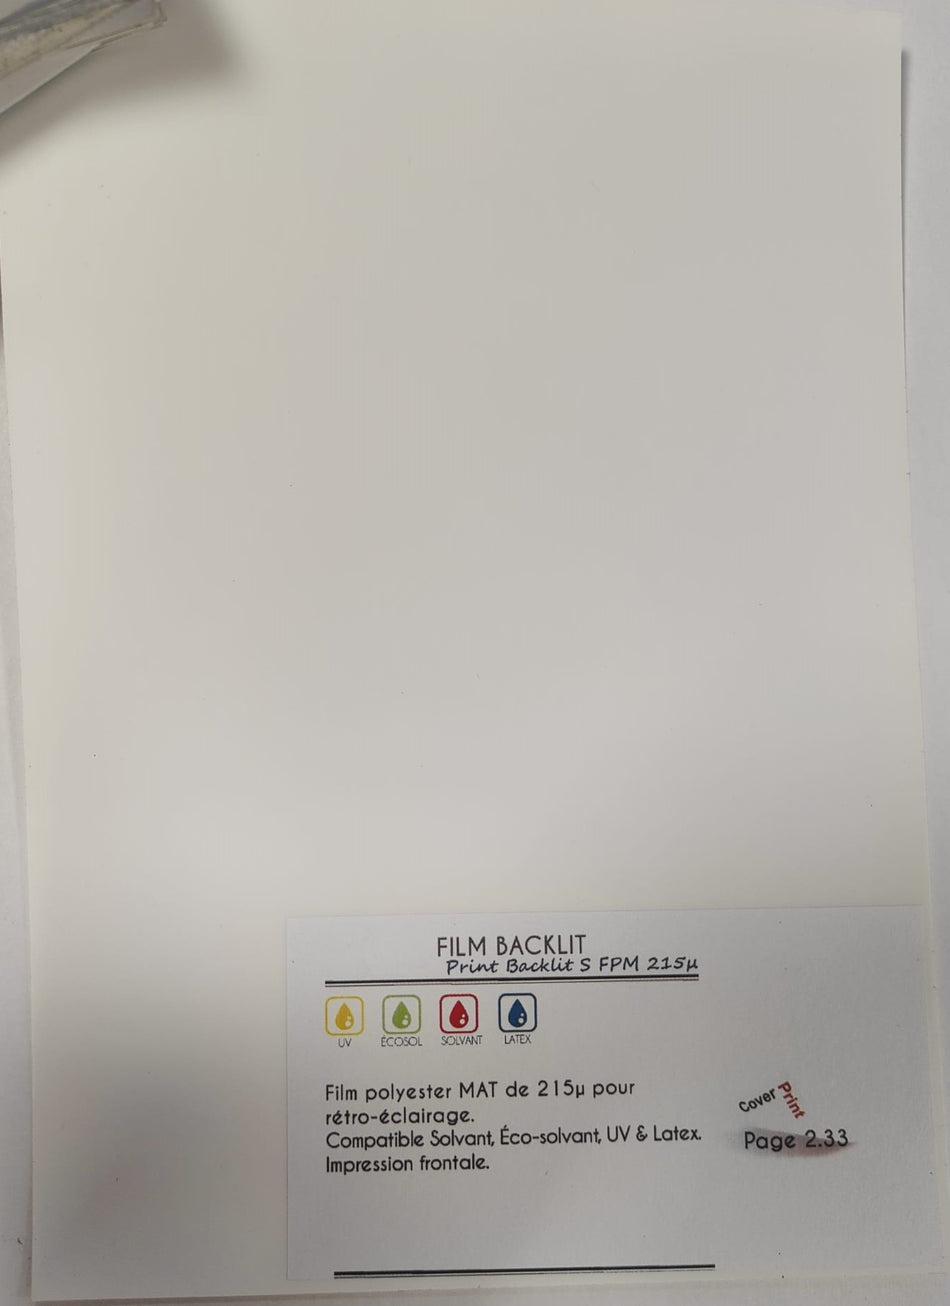 Film polyester backlit pour rétro-éclairage 215µ